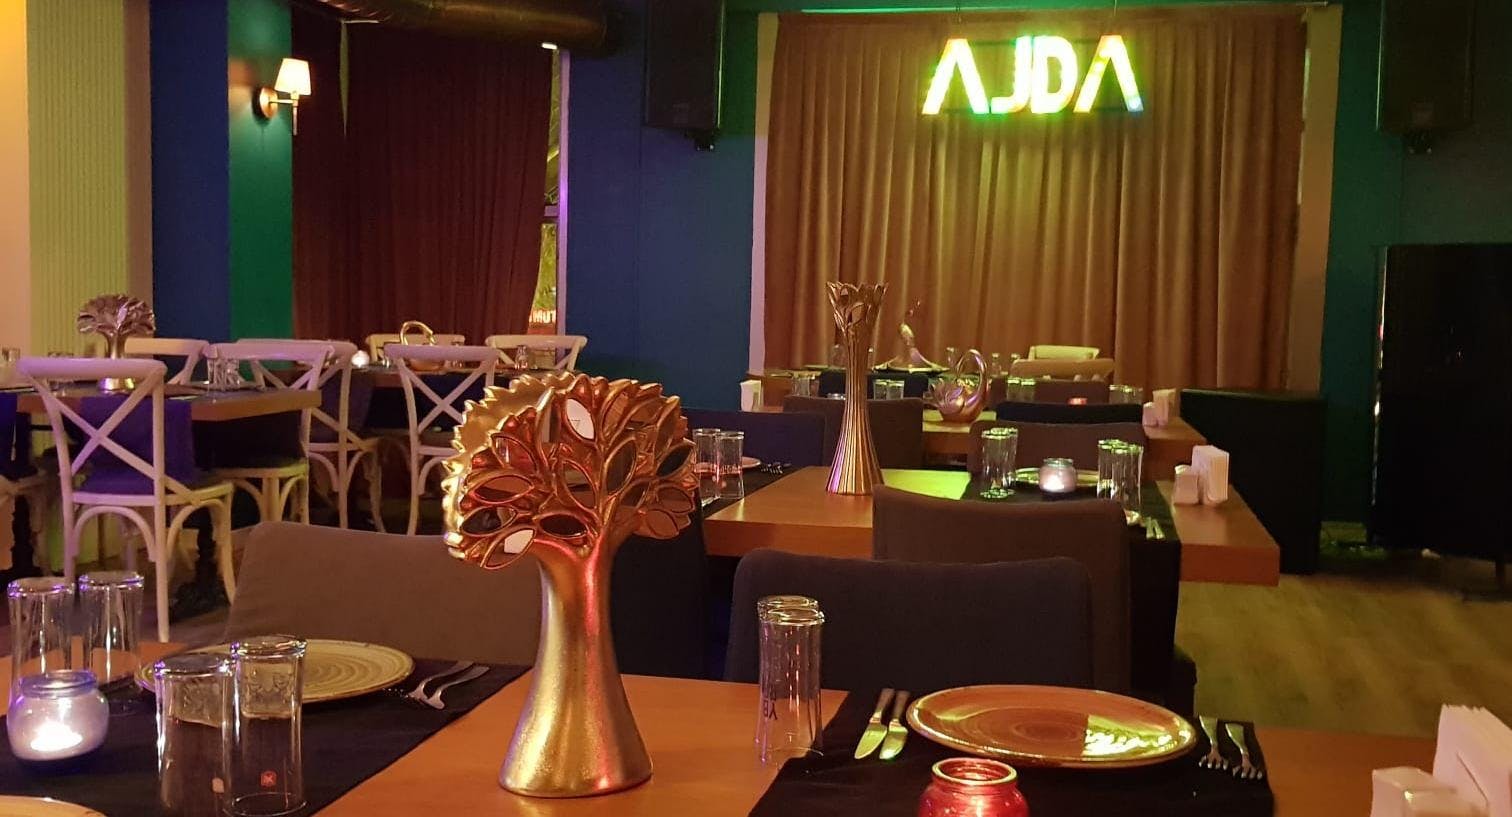 Photo of restaurant Ajda Koşuyolu in Koşuyolu, Istanbul